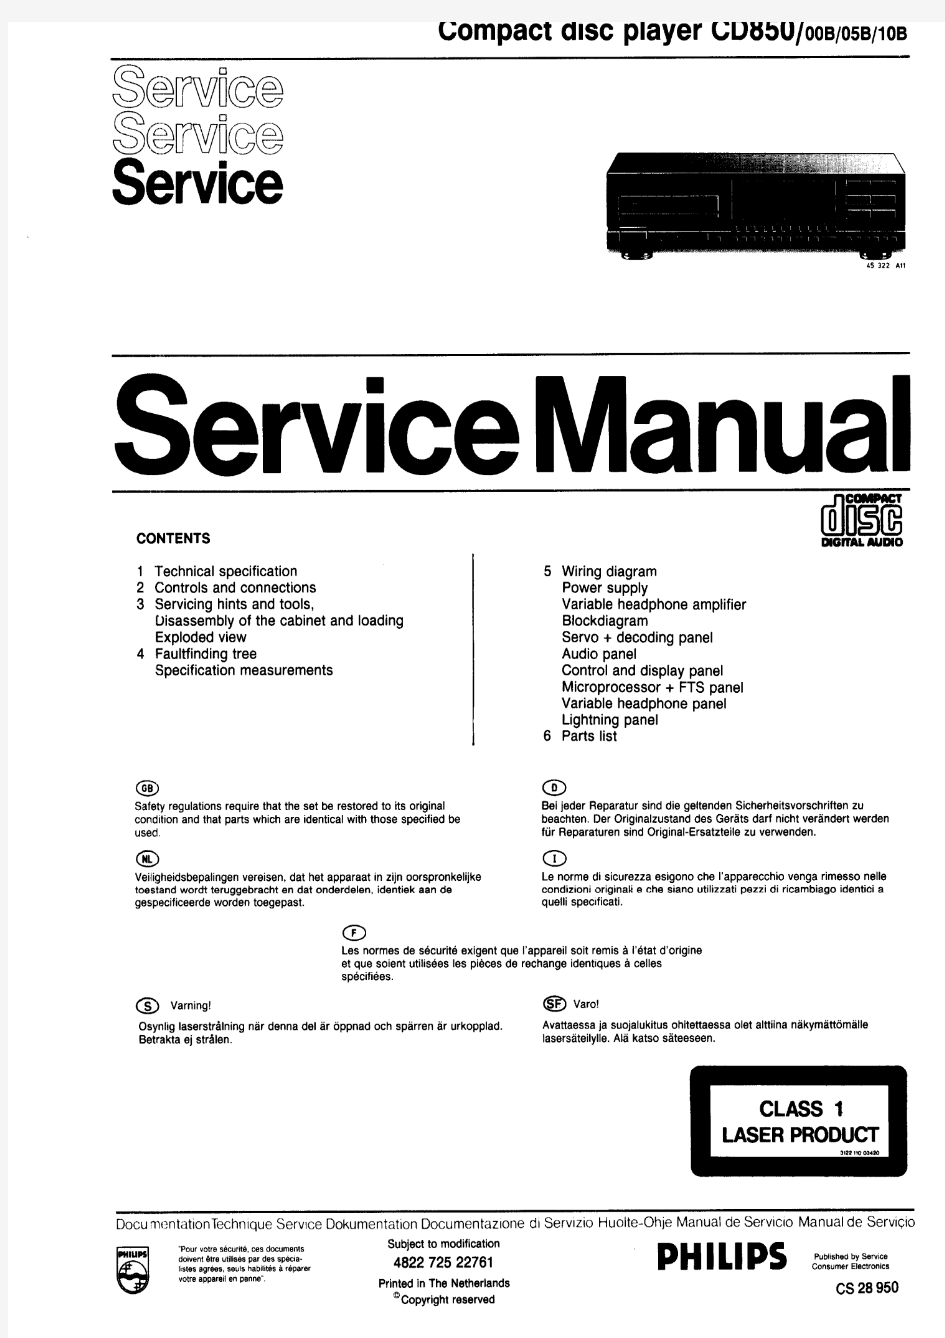 菲利浦CD850唱机维修手册(CDM4光头SAA7321解码(1-25页)